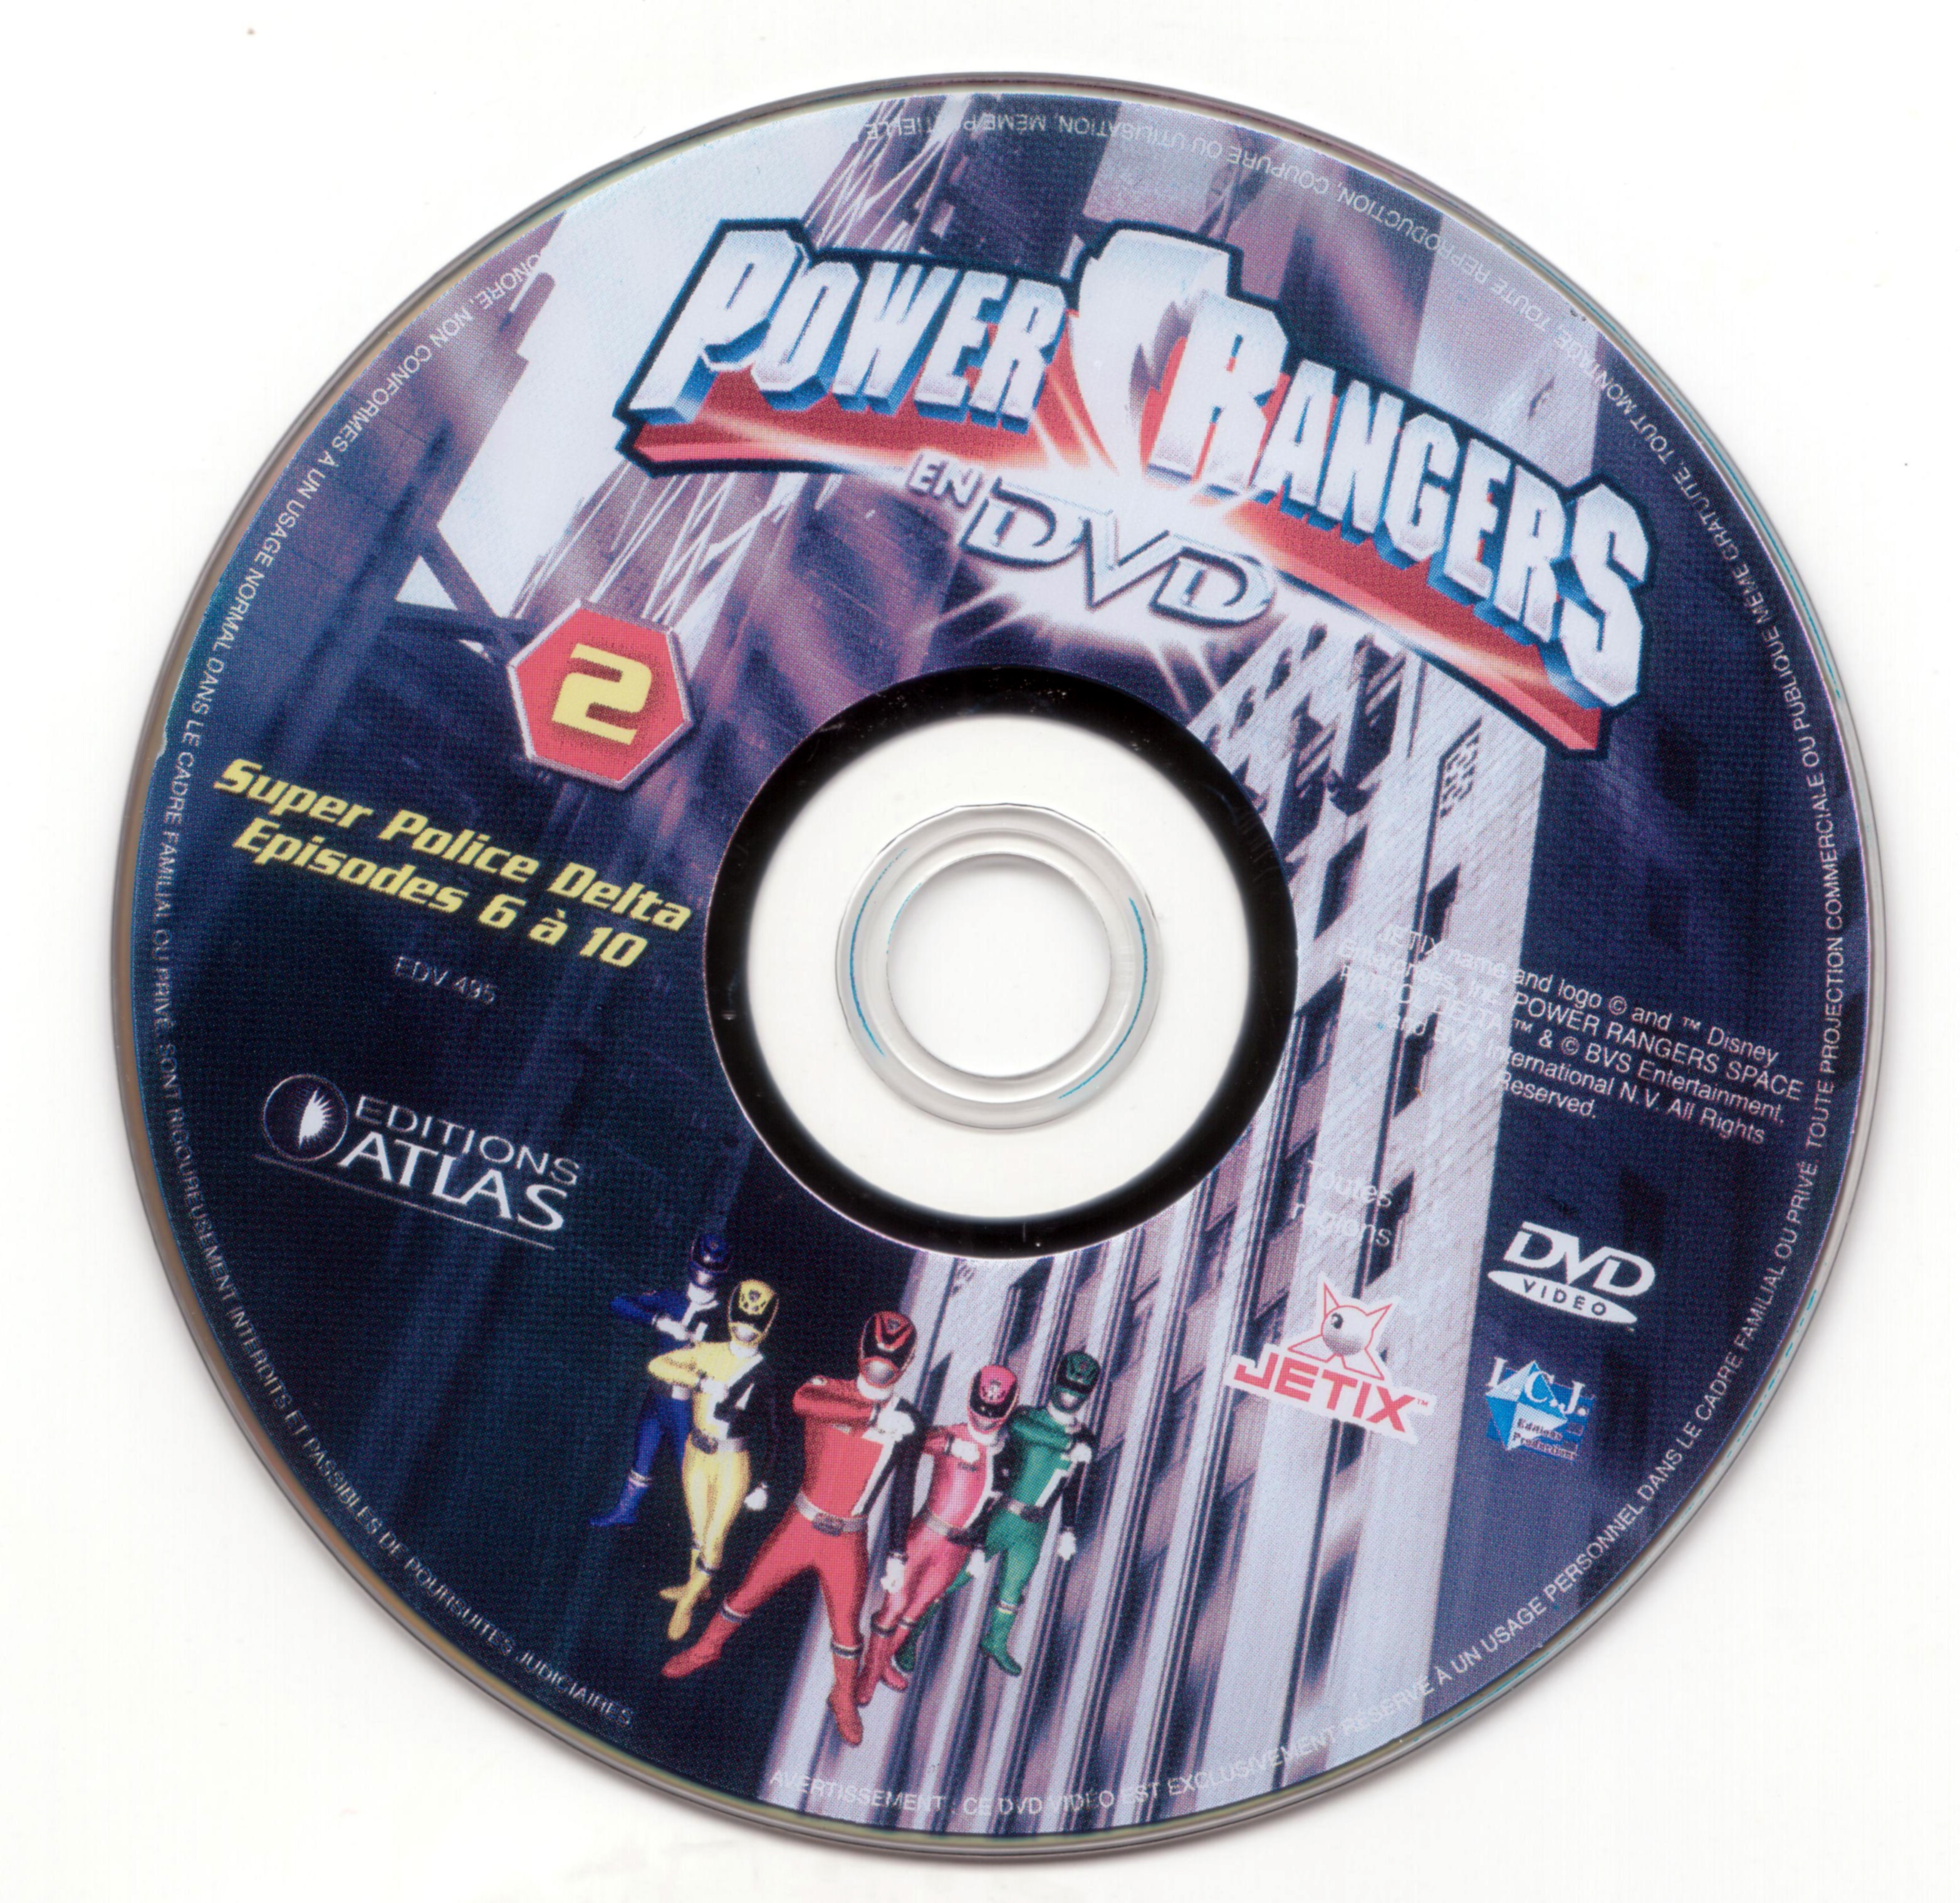 Power rangers DVD 2 (Ed Atlas)